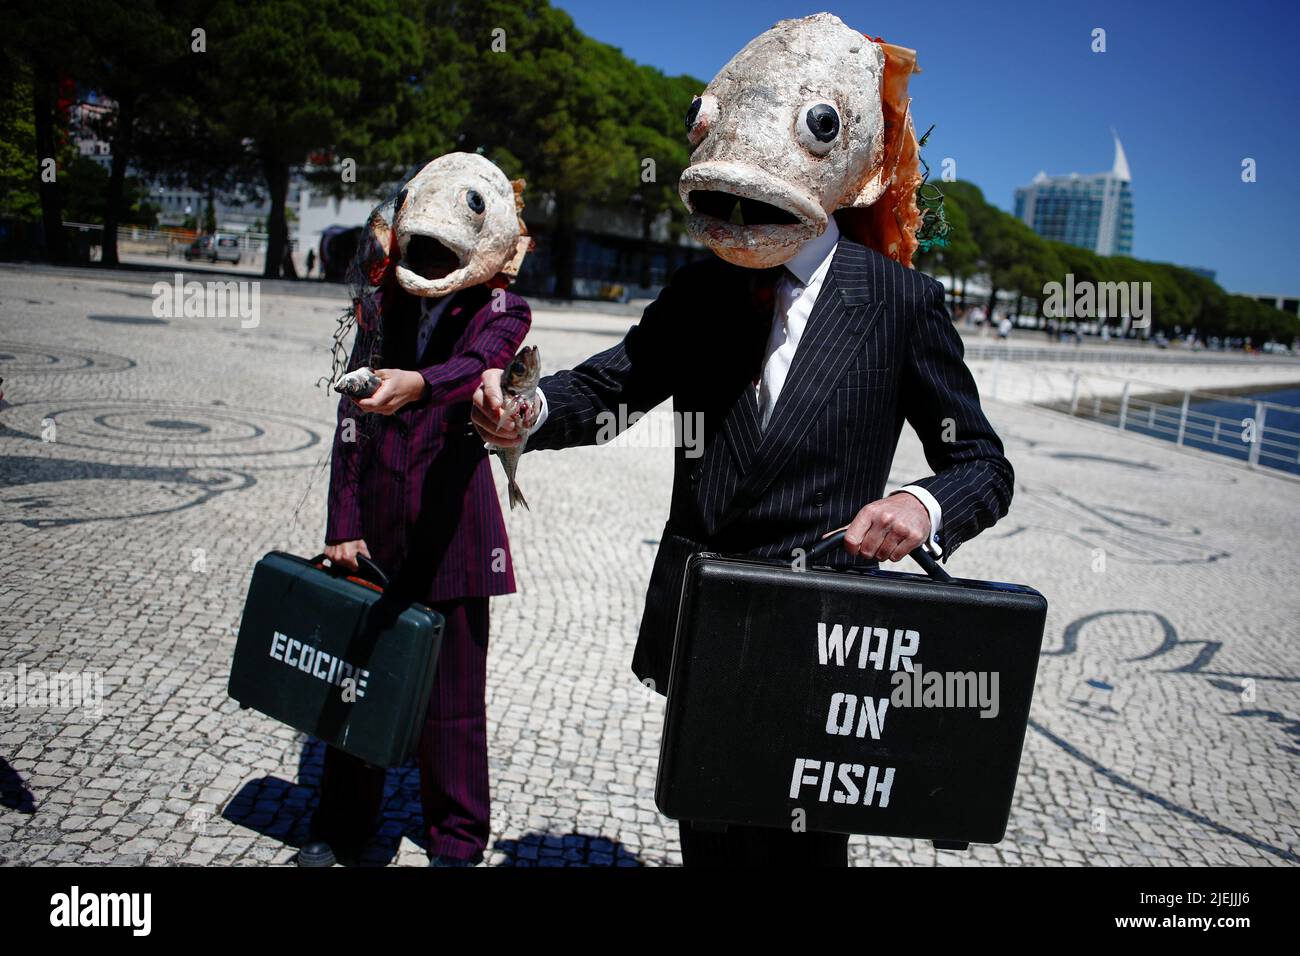 Aktivisten der Ocean Rebellion versammeln sich vor der UN-Ozeankonferenz, um gegen das zu protestieren, was sie als "Krieg gegen den Fisch" bezeichnen, am 27. Juni 2022 in Lissabon, Portugal. REUTERS/Pedro Nunes Stockfoto